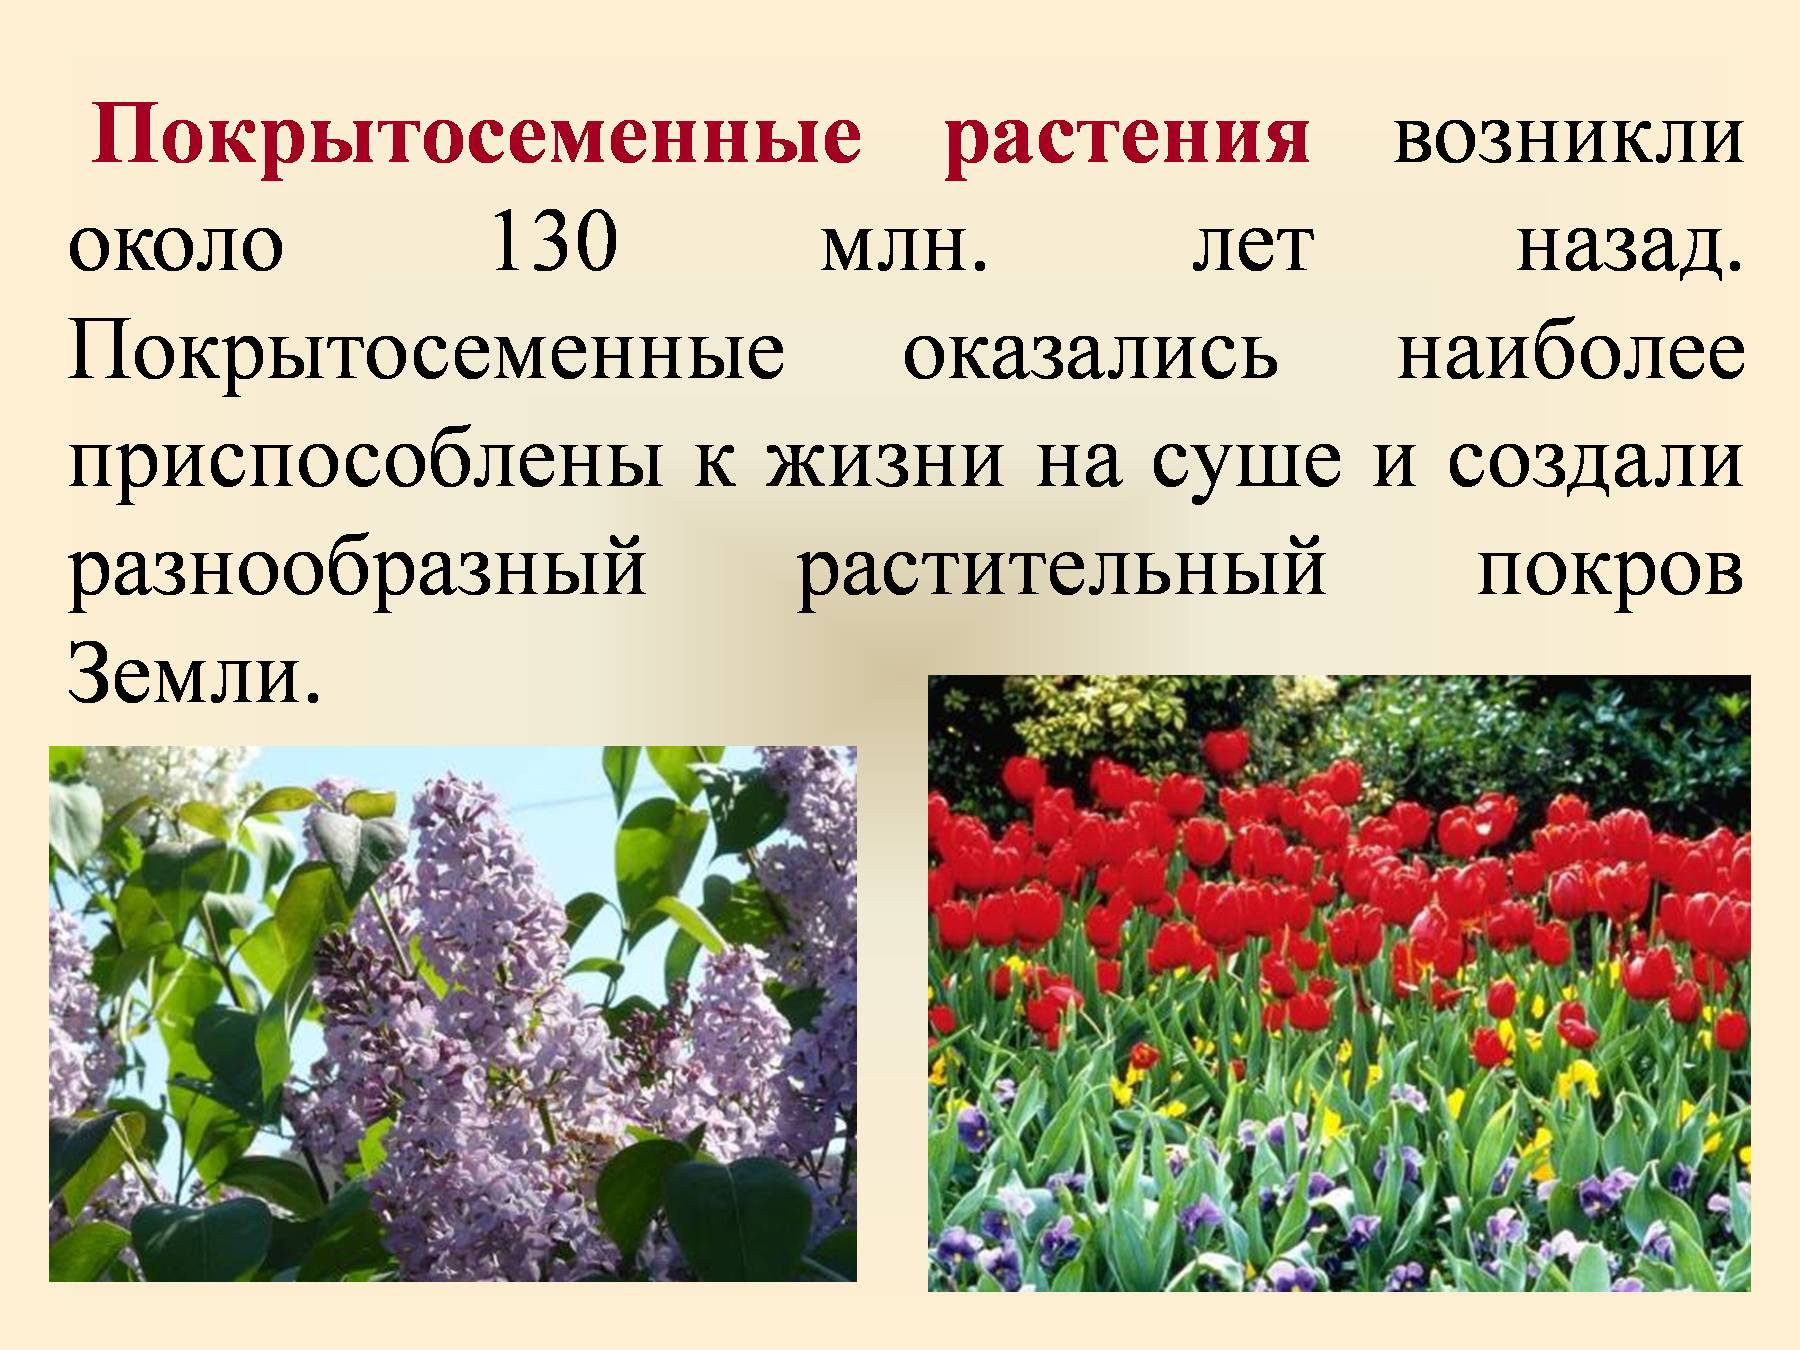 Покрытосеменных цветковых растений. Покрытосеменыерастения. Покрытосеменные или цветковые растения. Представители цветковых растений.